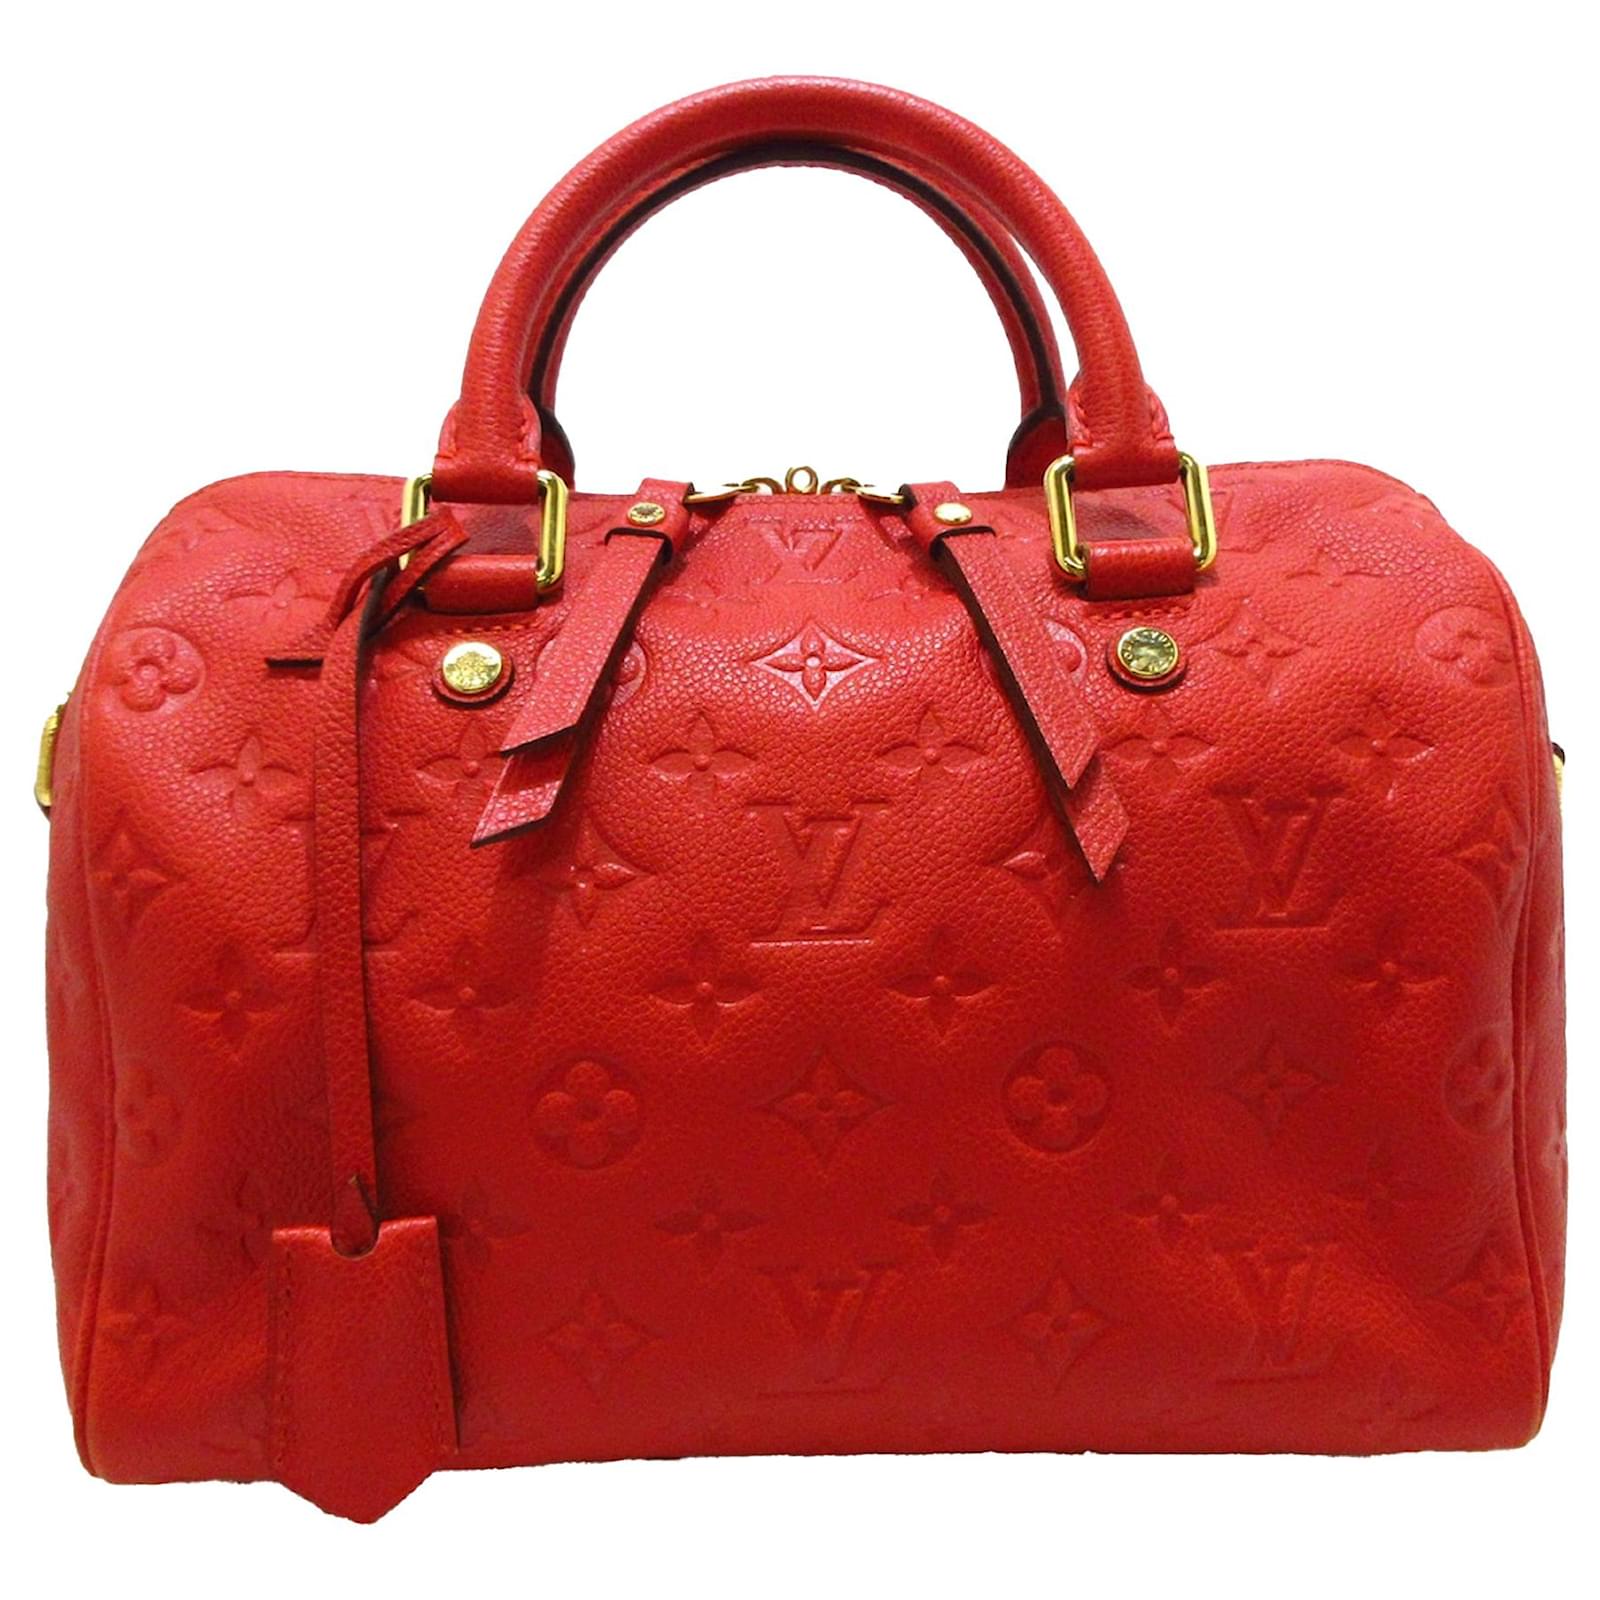 Louis Vuitton Red Monogram Empreinte Speedy Bandouliere 25 Leather